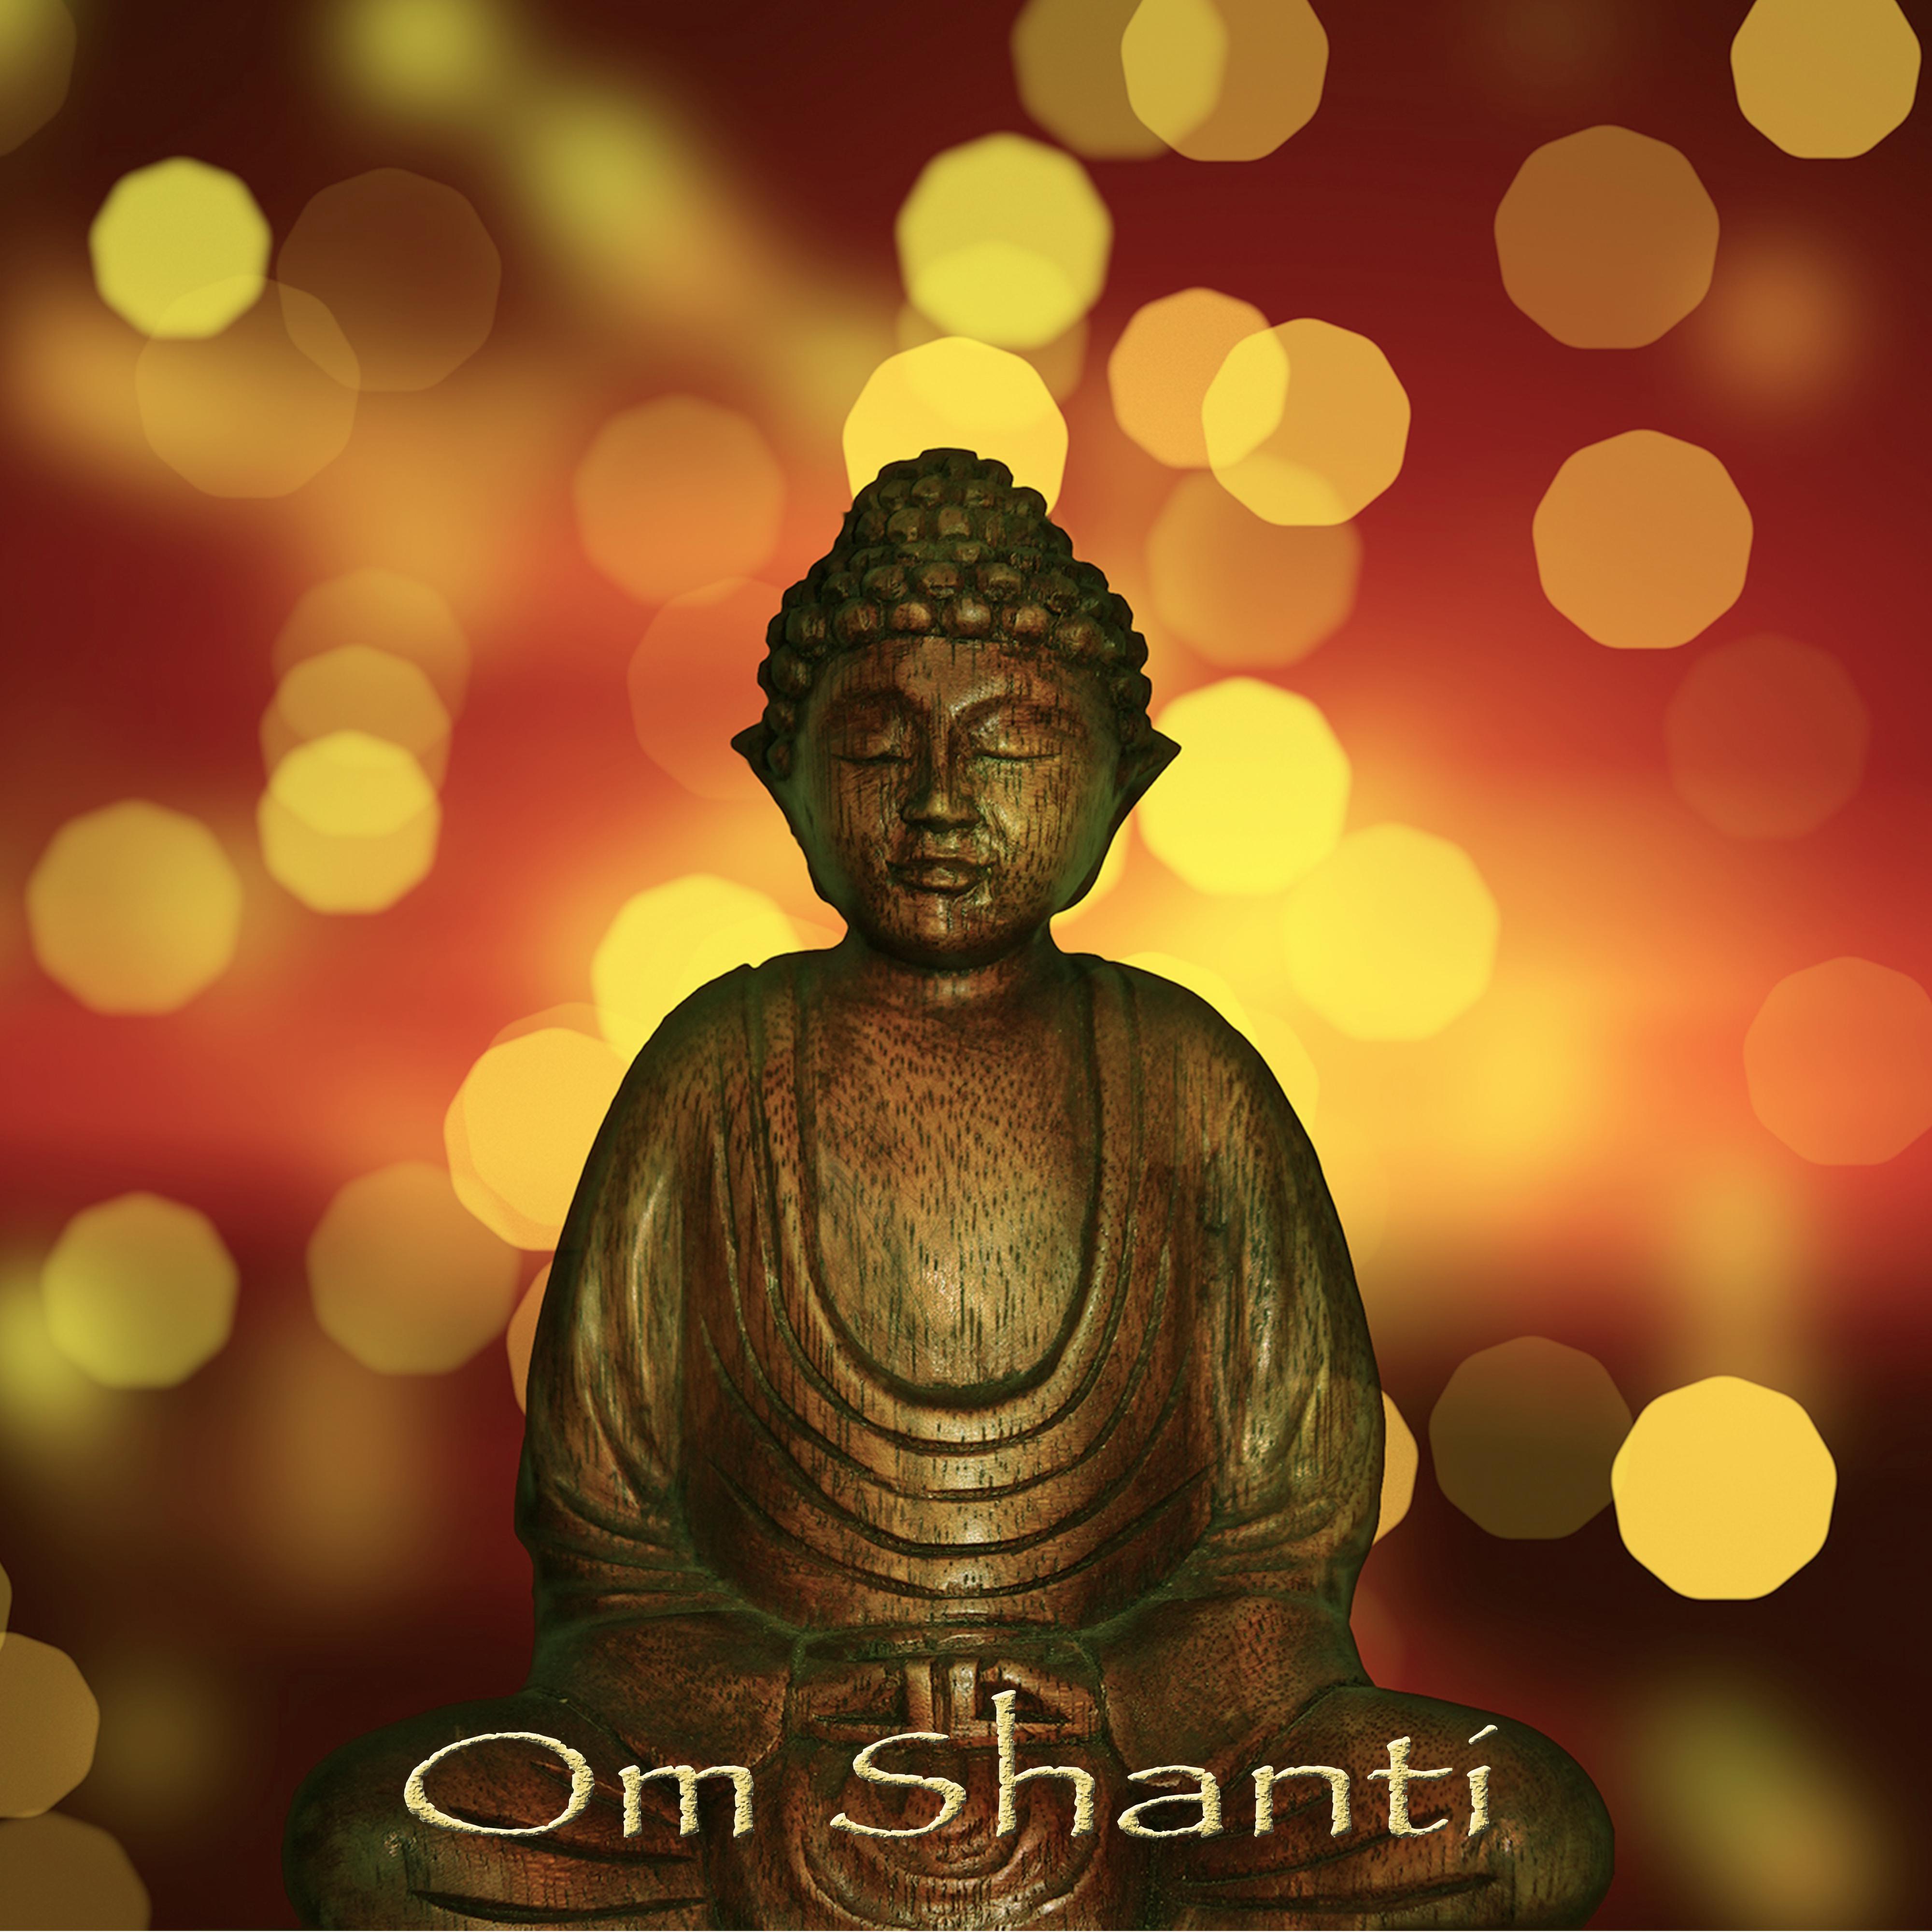 Om Shanti – Raja Yoga & Yoga Nidra Amazing Meditation Music